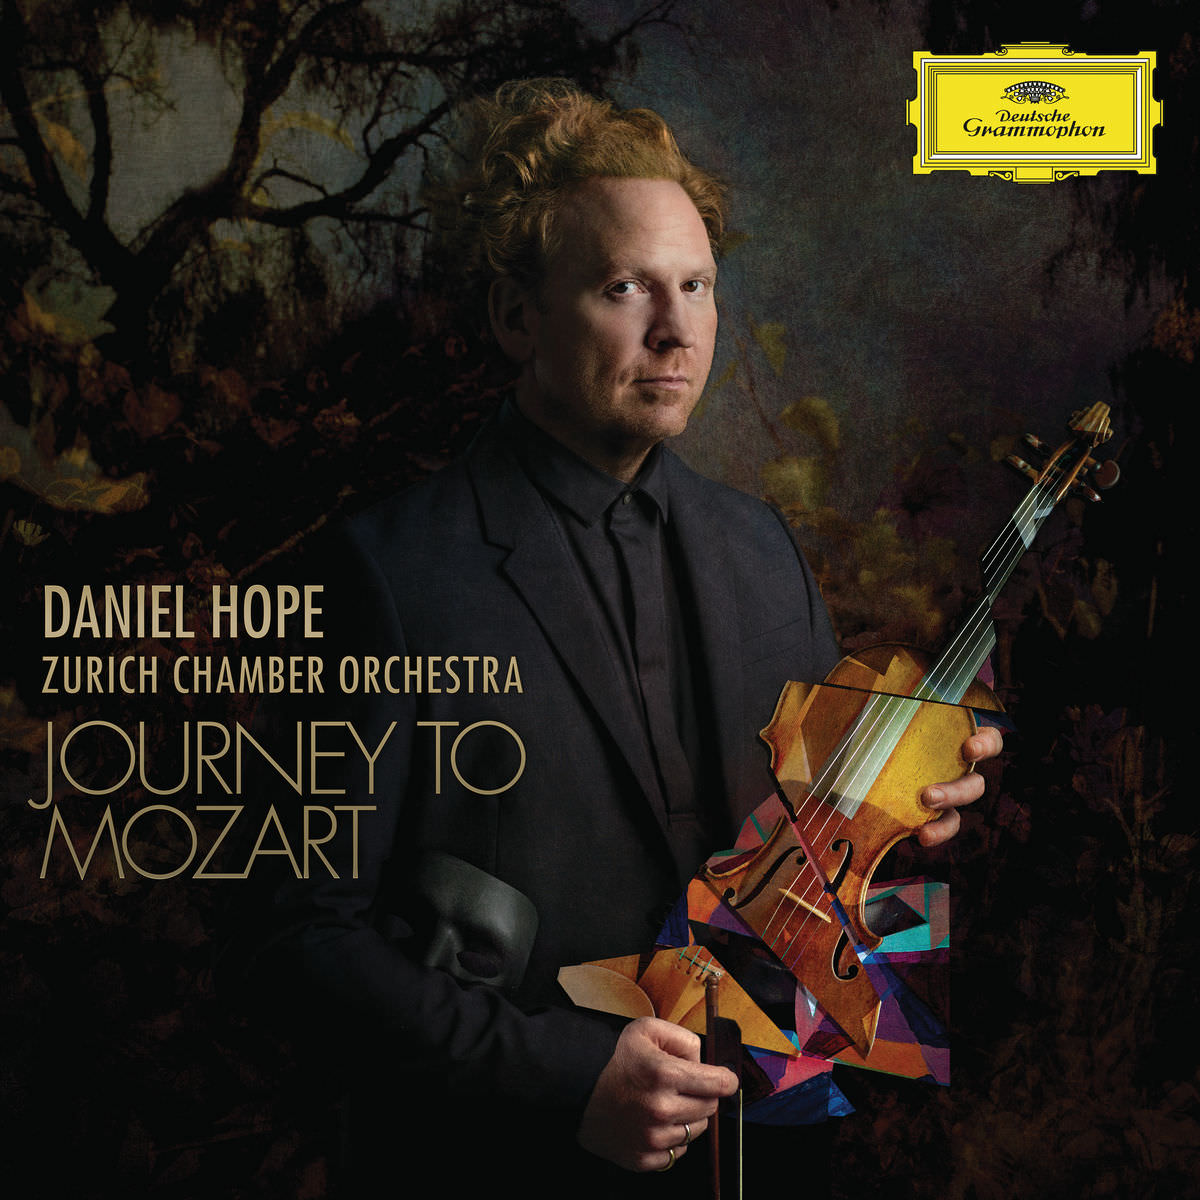 Daniel Hope & Zurich Chamber Orchestra - Journey to Mozart (2018) [FLAC 24bit/96kHz]